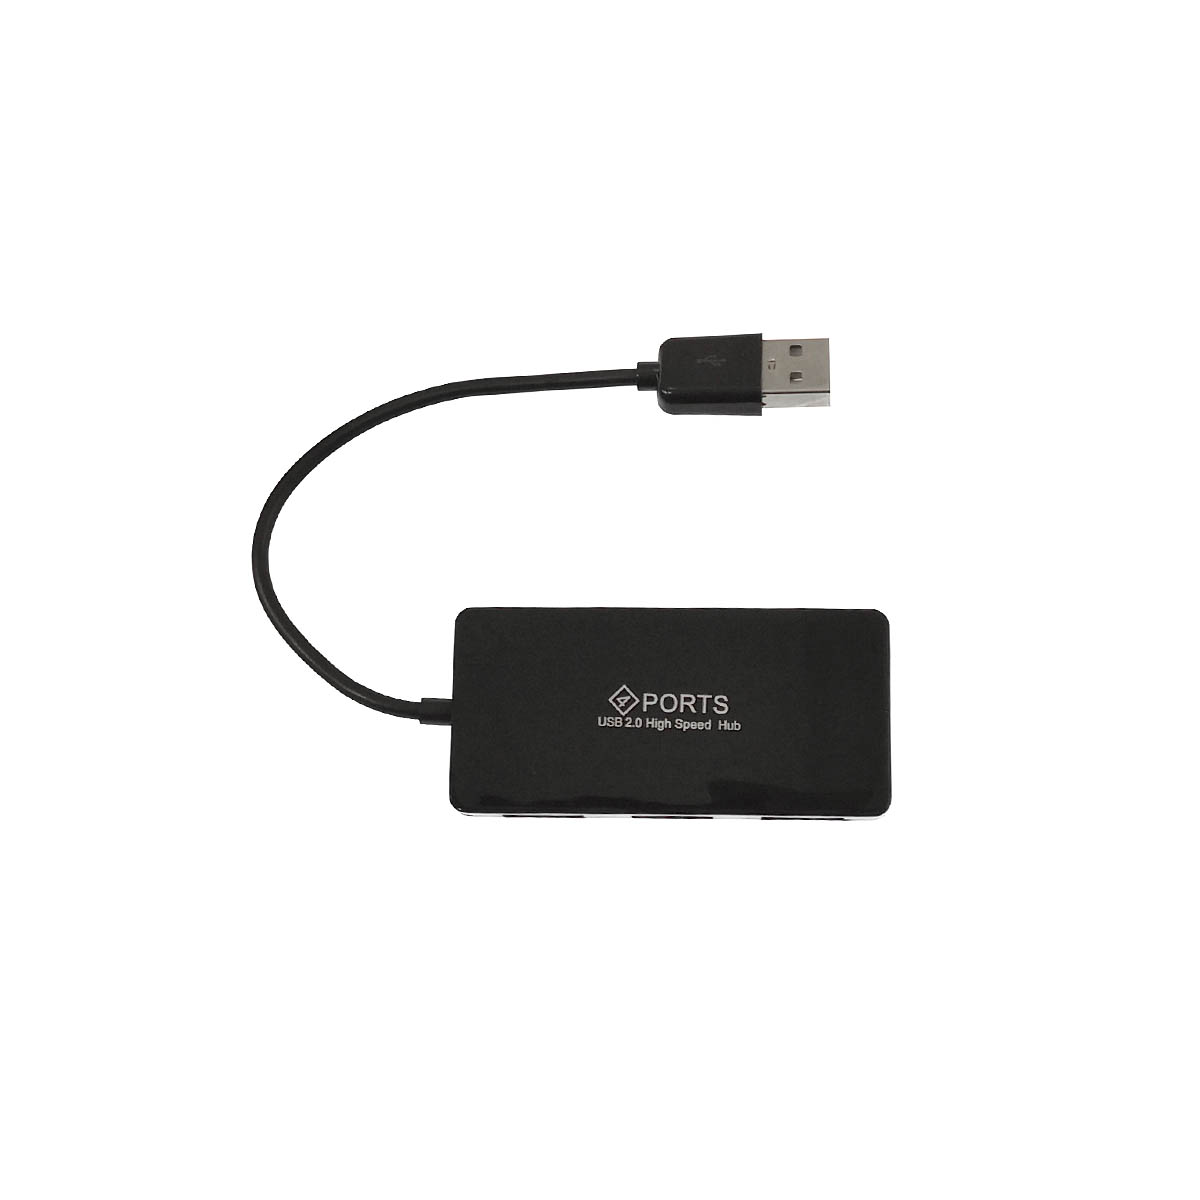 Переходник, хаб концентратор H407 USB на 4 USB 2.0, цвет черный